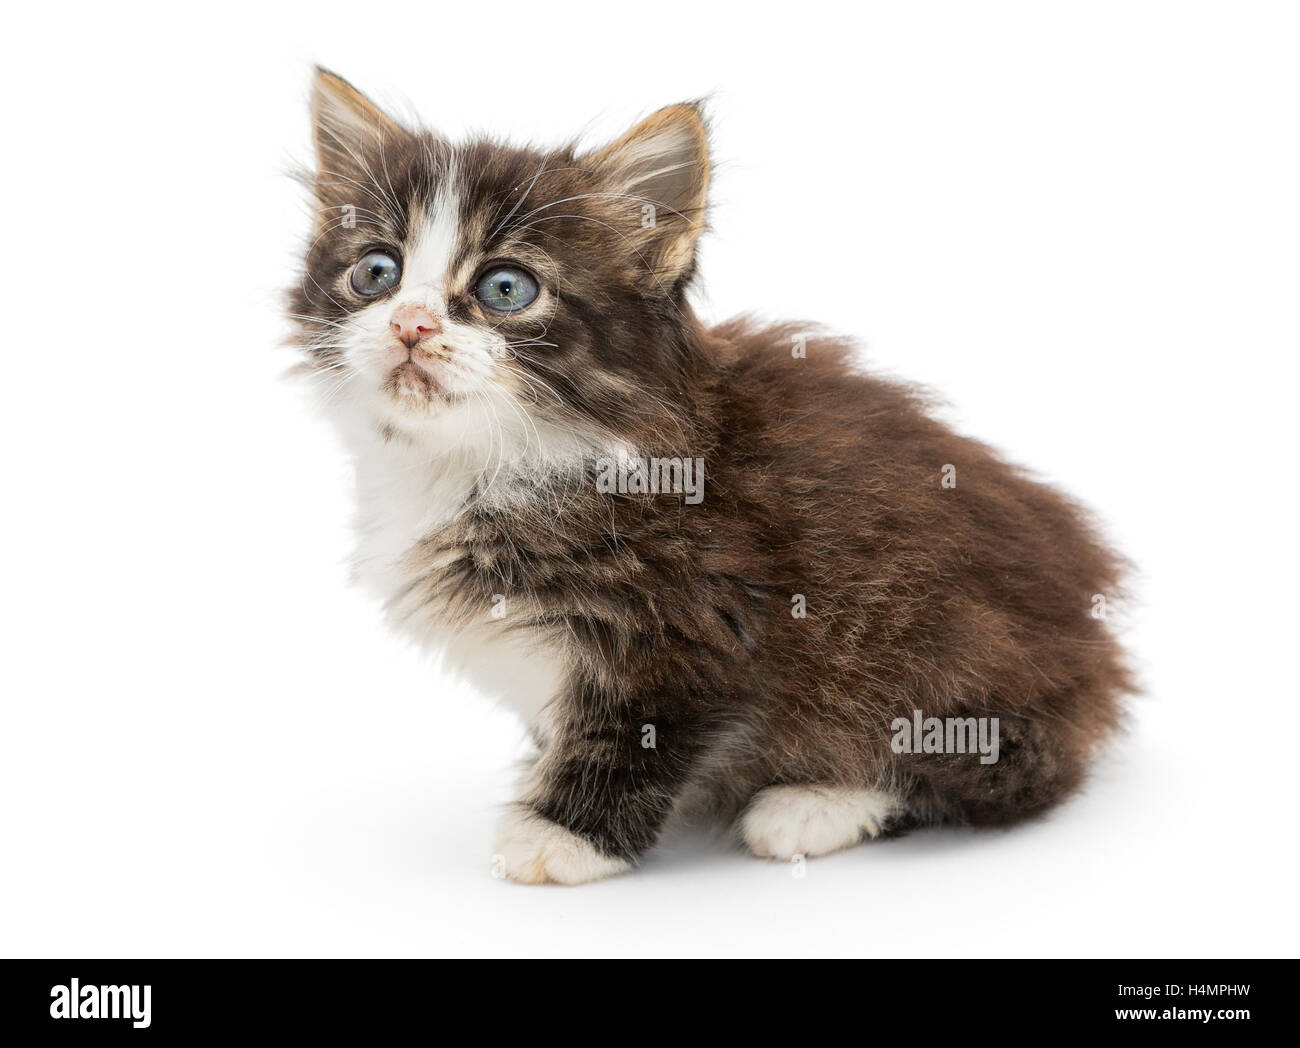 Sad, small, gray kitten isolated on white Stock Photo